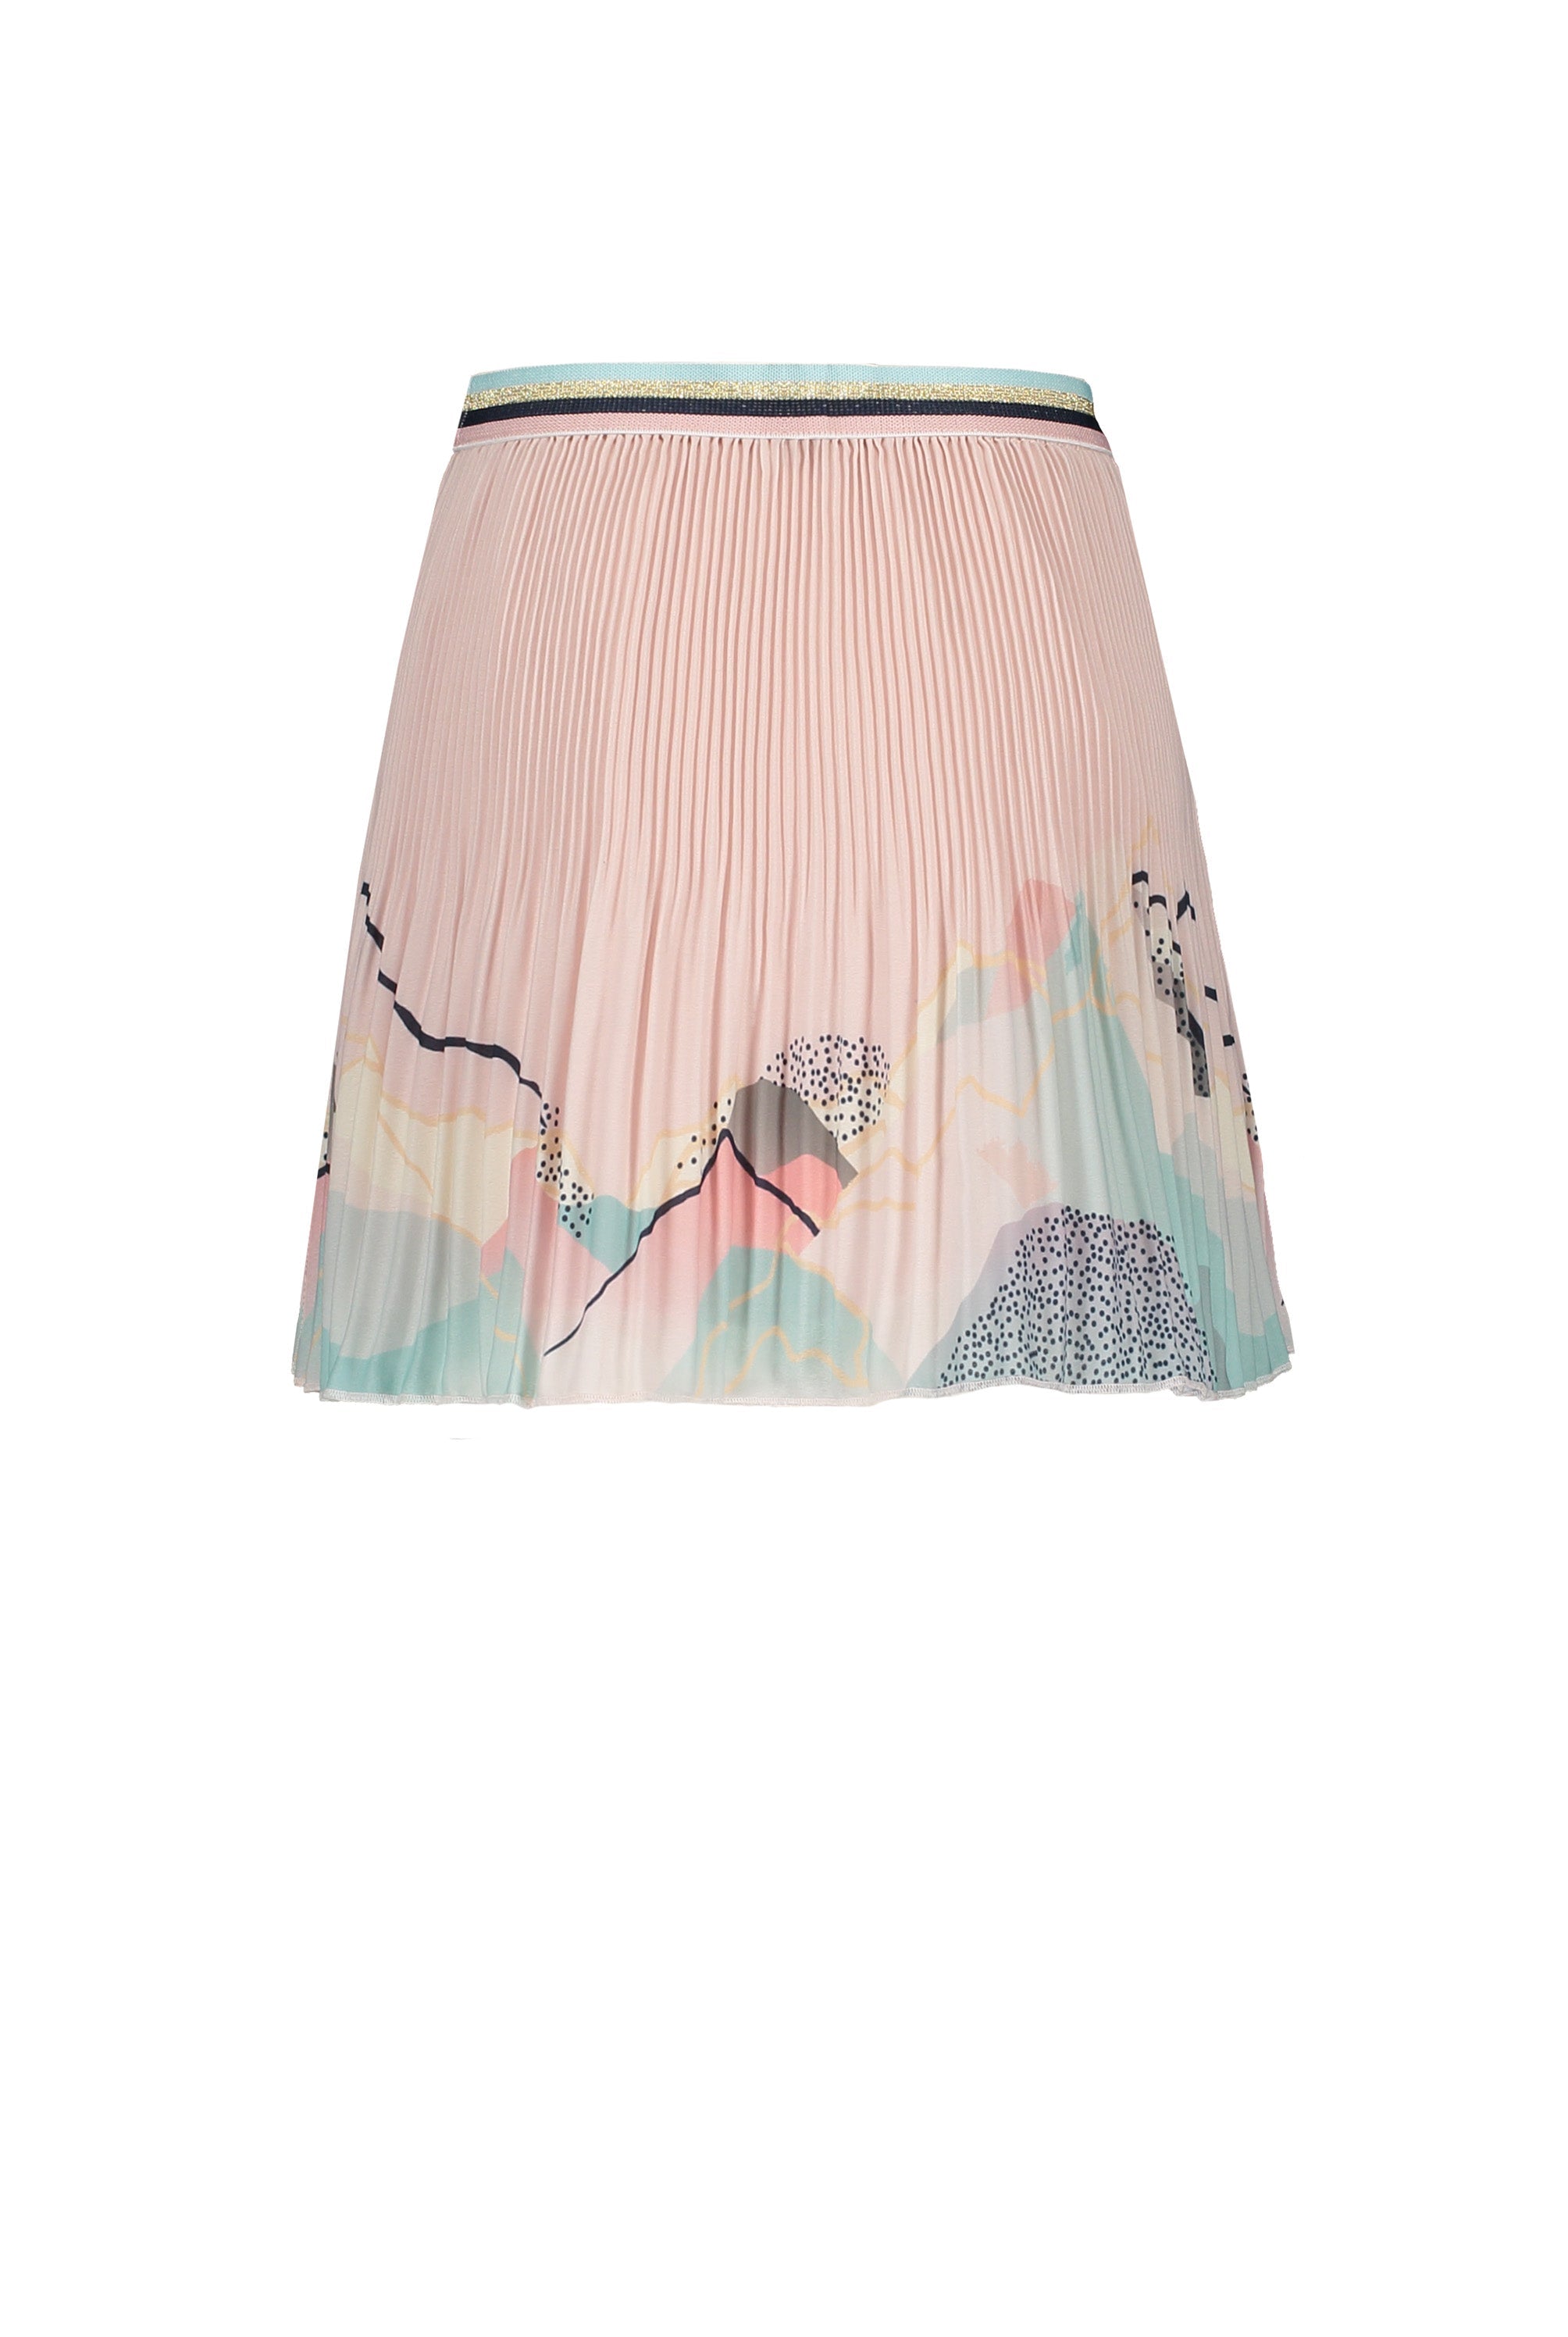 Meisjes Noel pleated short skirt with borderprint van NoNo in de kleur Rosy Sand in maat 146/152.